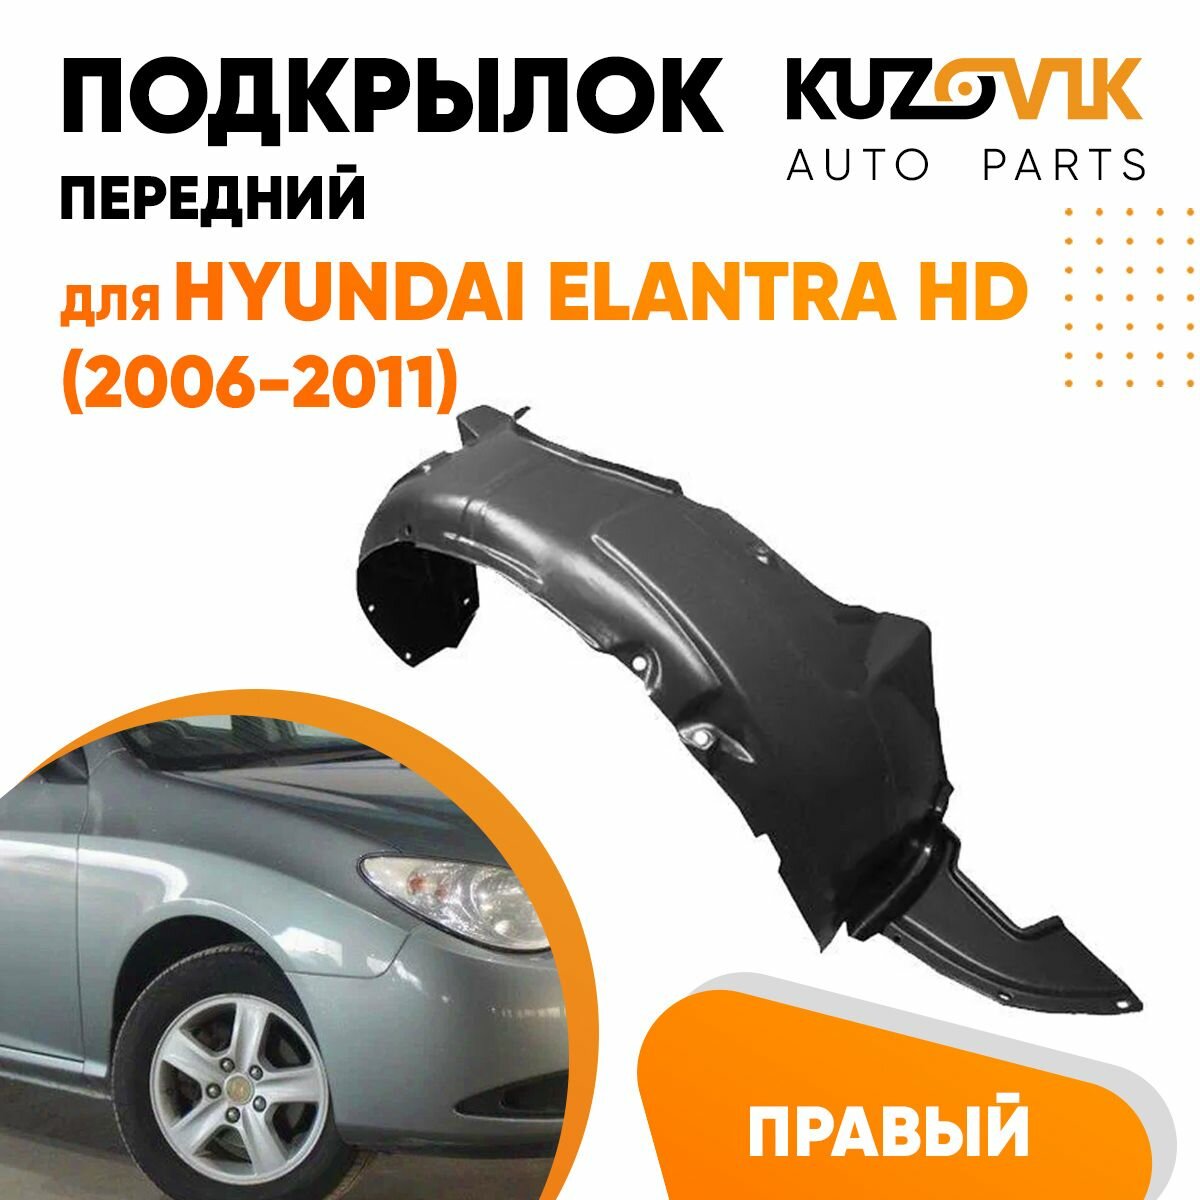 Подкрылок передний правый Hyundai Elantra HD (2006-2011)